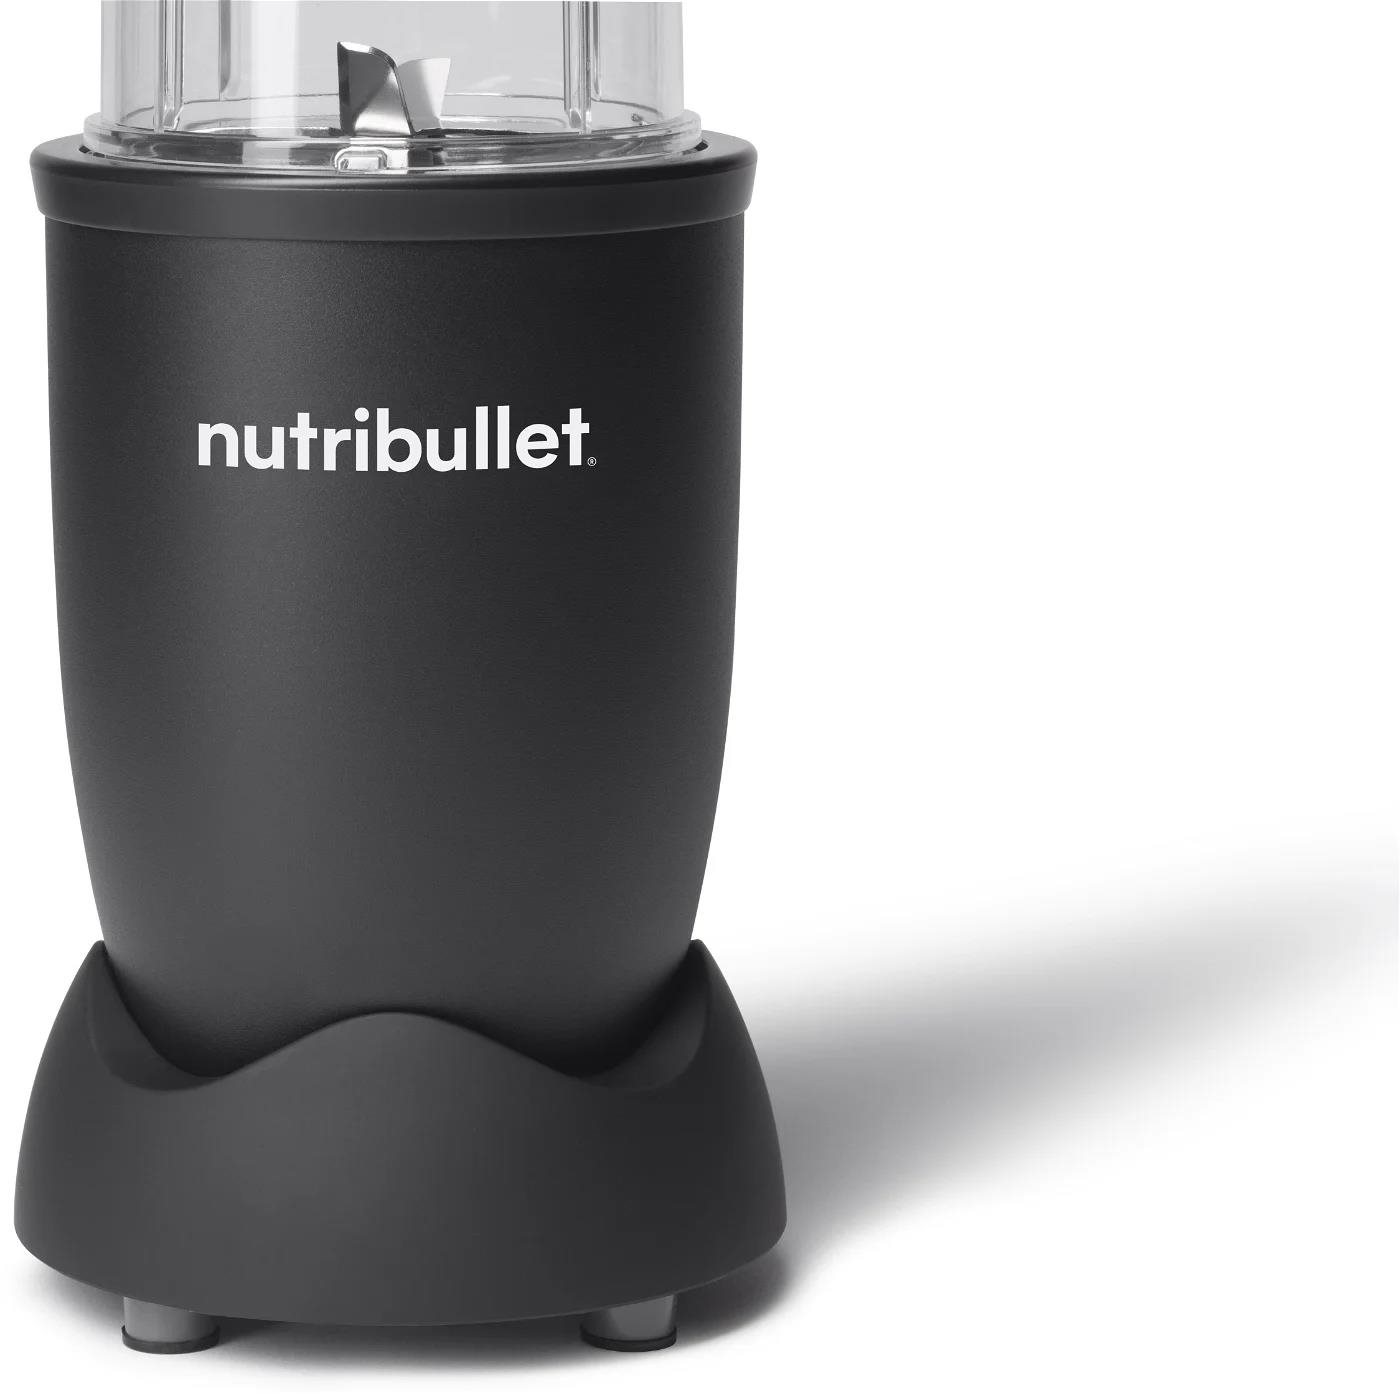 Nutribullet NB907MAB stolní mixér, 900 W, 1 rychlost, 900 ml, čepele z nerezové oceli, černá2 